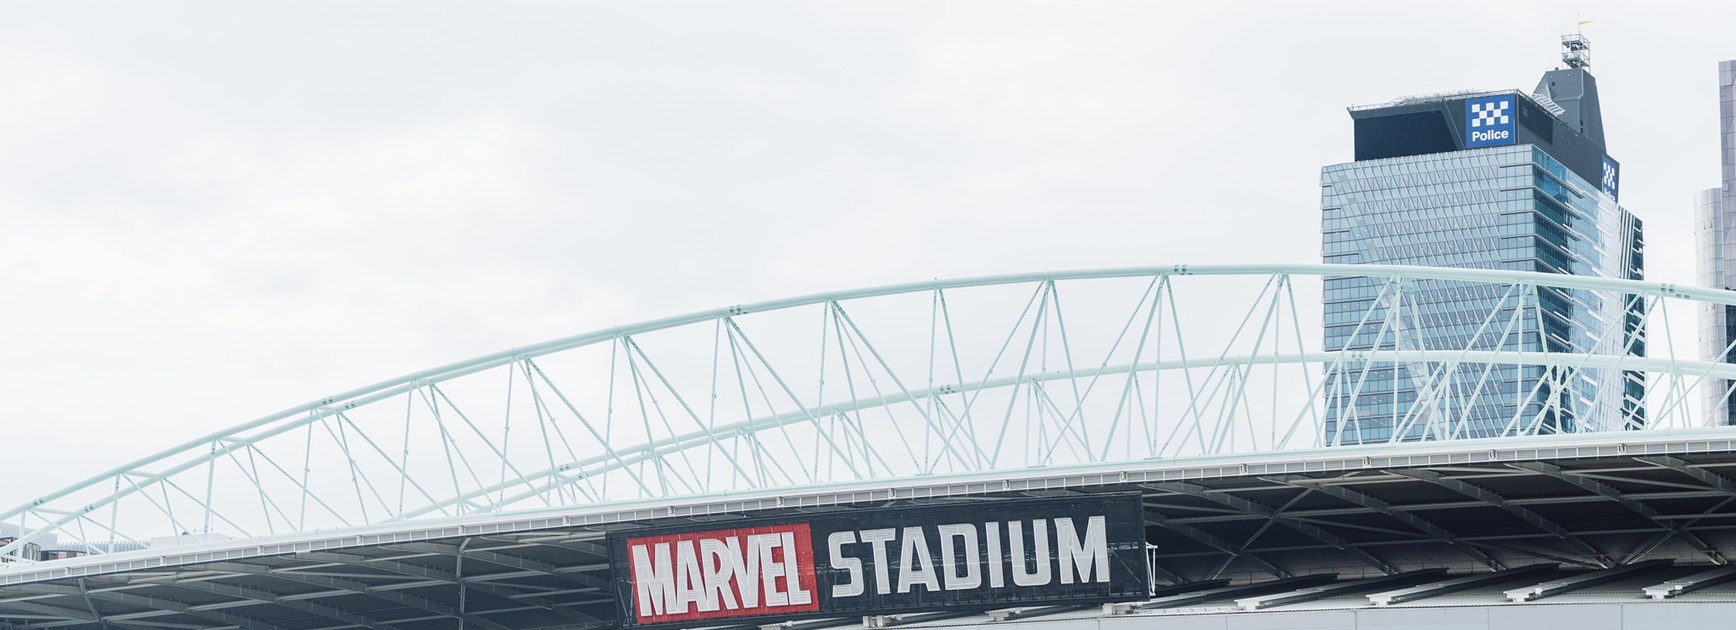 Things to do around Marvel Stadium